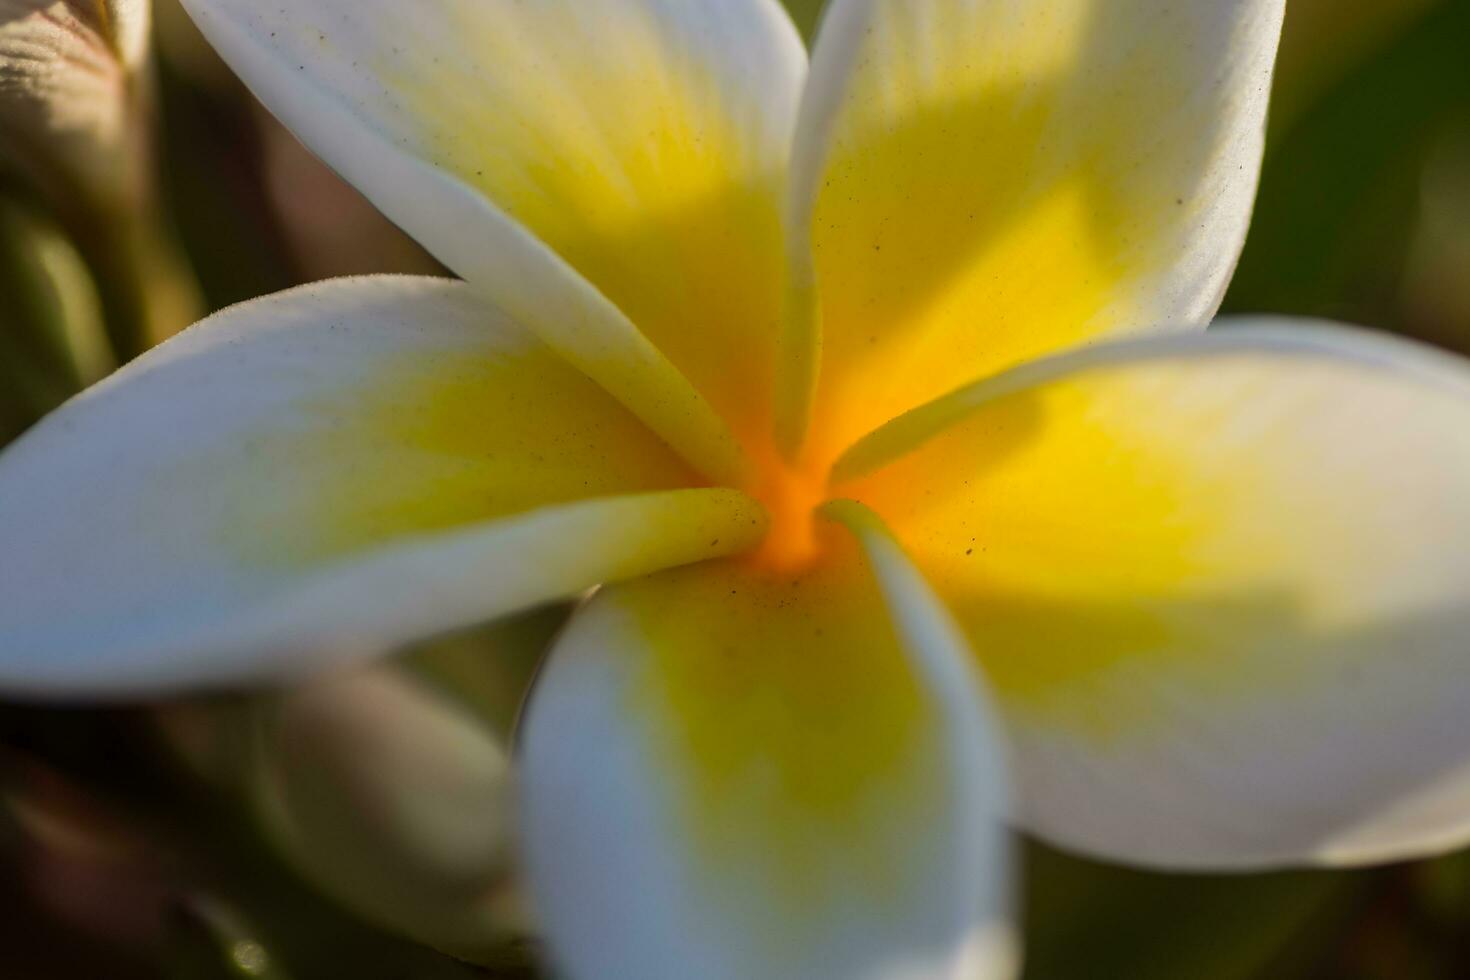 magi vit och gul doftande blomma från en plumeria buske i en tillflykt detalj foto